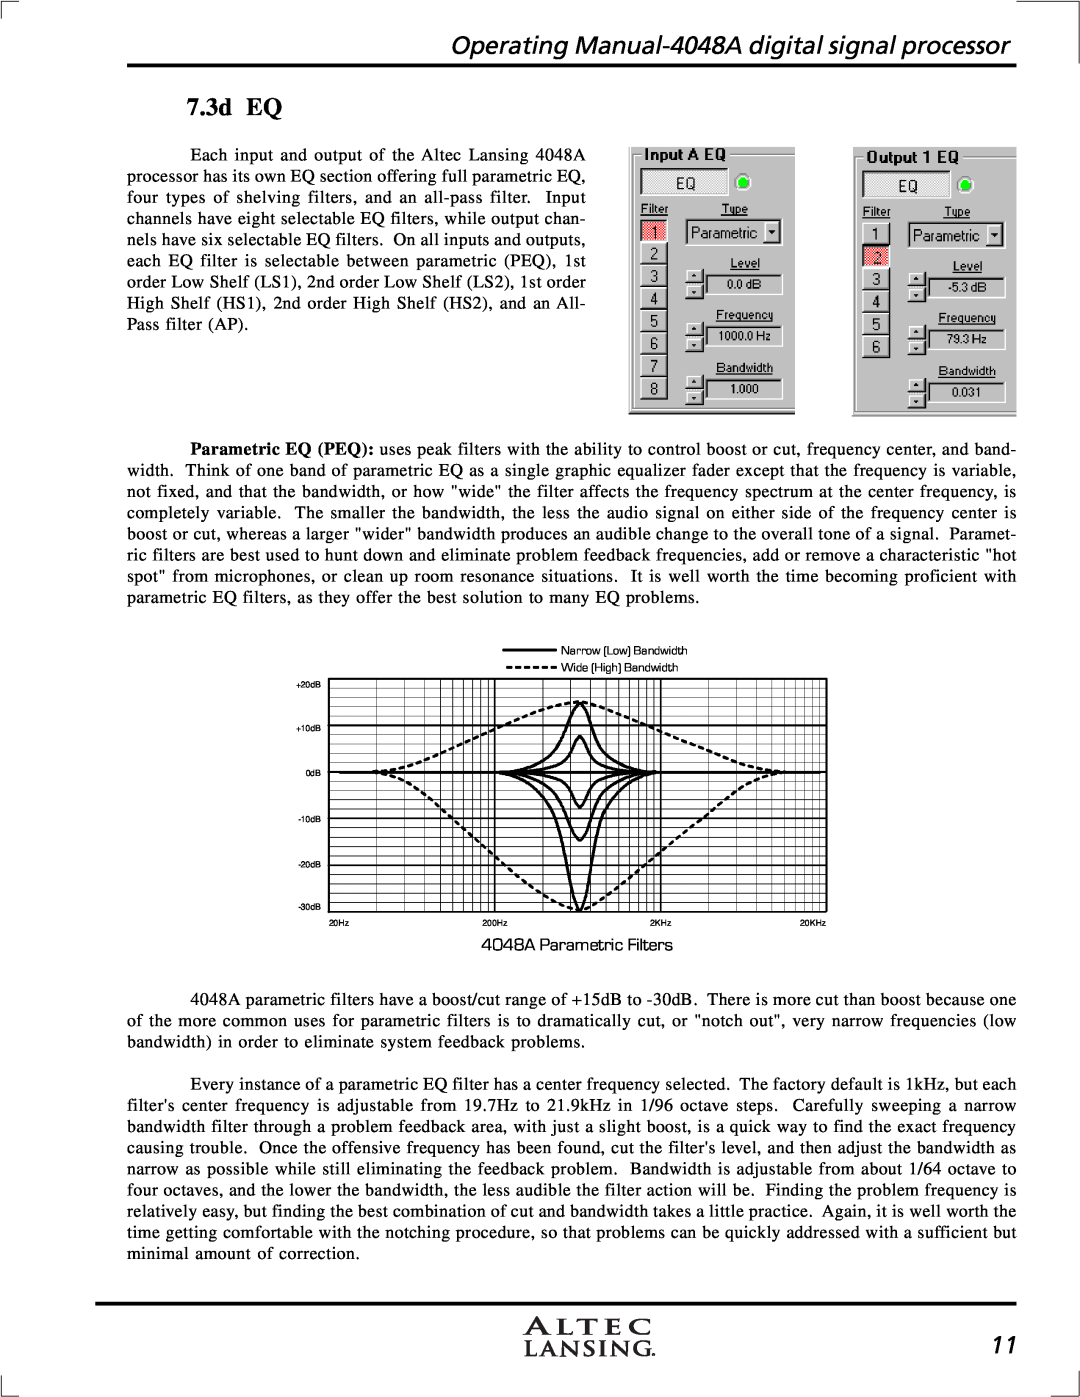 Altec Lansing 4948A manual 7.3d EQ, Operating Manual-4048A digital signal processor, 4048A Parametric Filters 